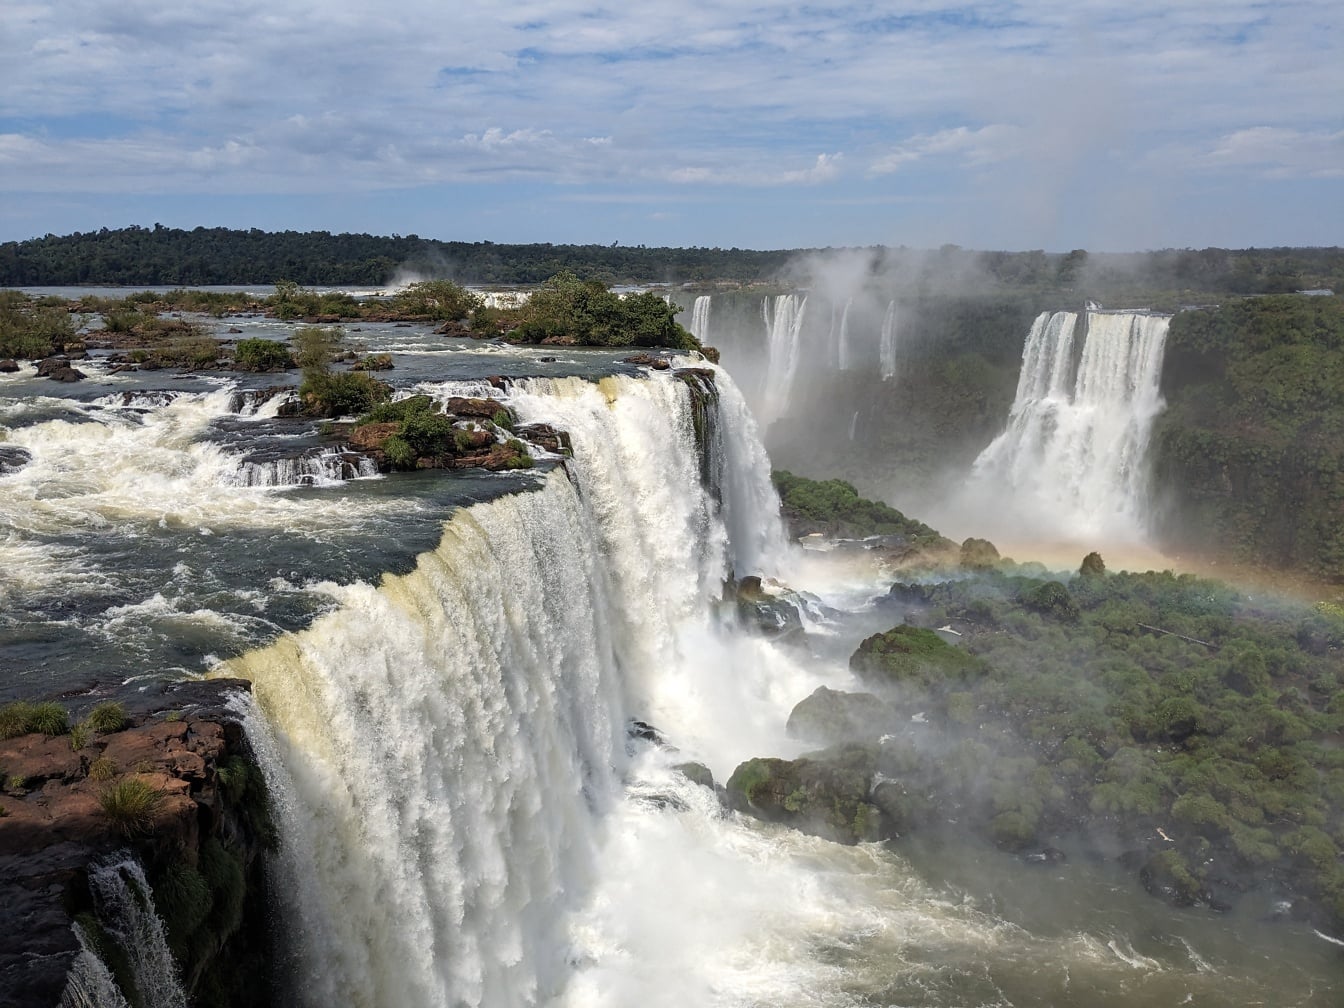 Sumuinen sateenkaari Iguazu-joen vesiputouksilla luonnonpuistossa Argentiinan ja Brasilian rajalla